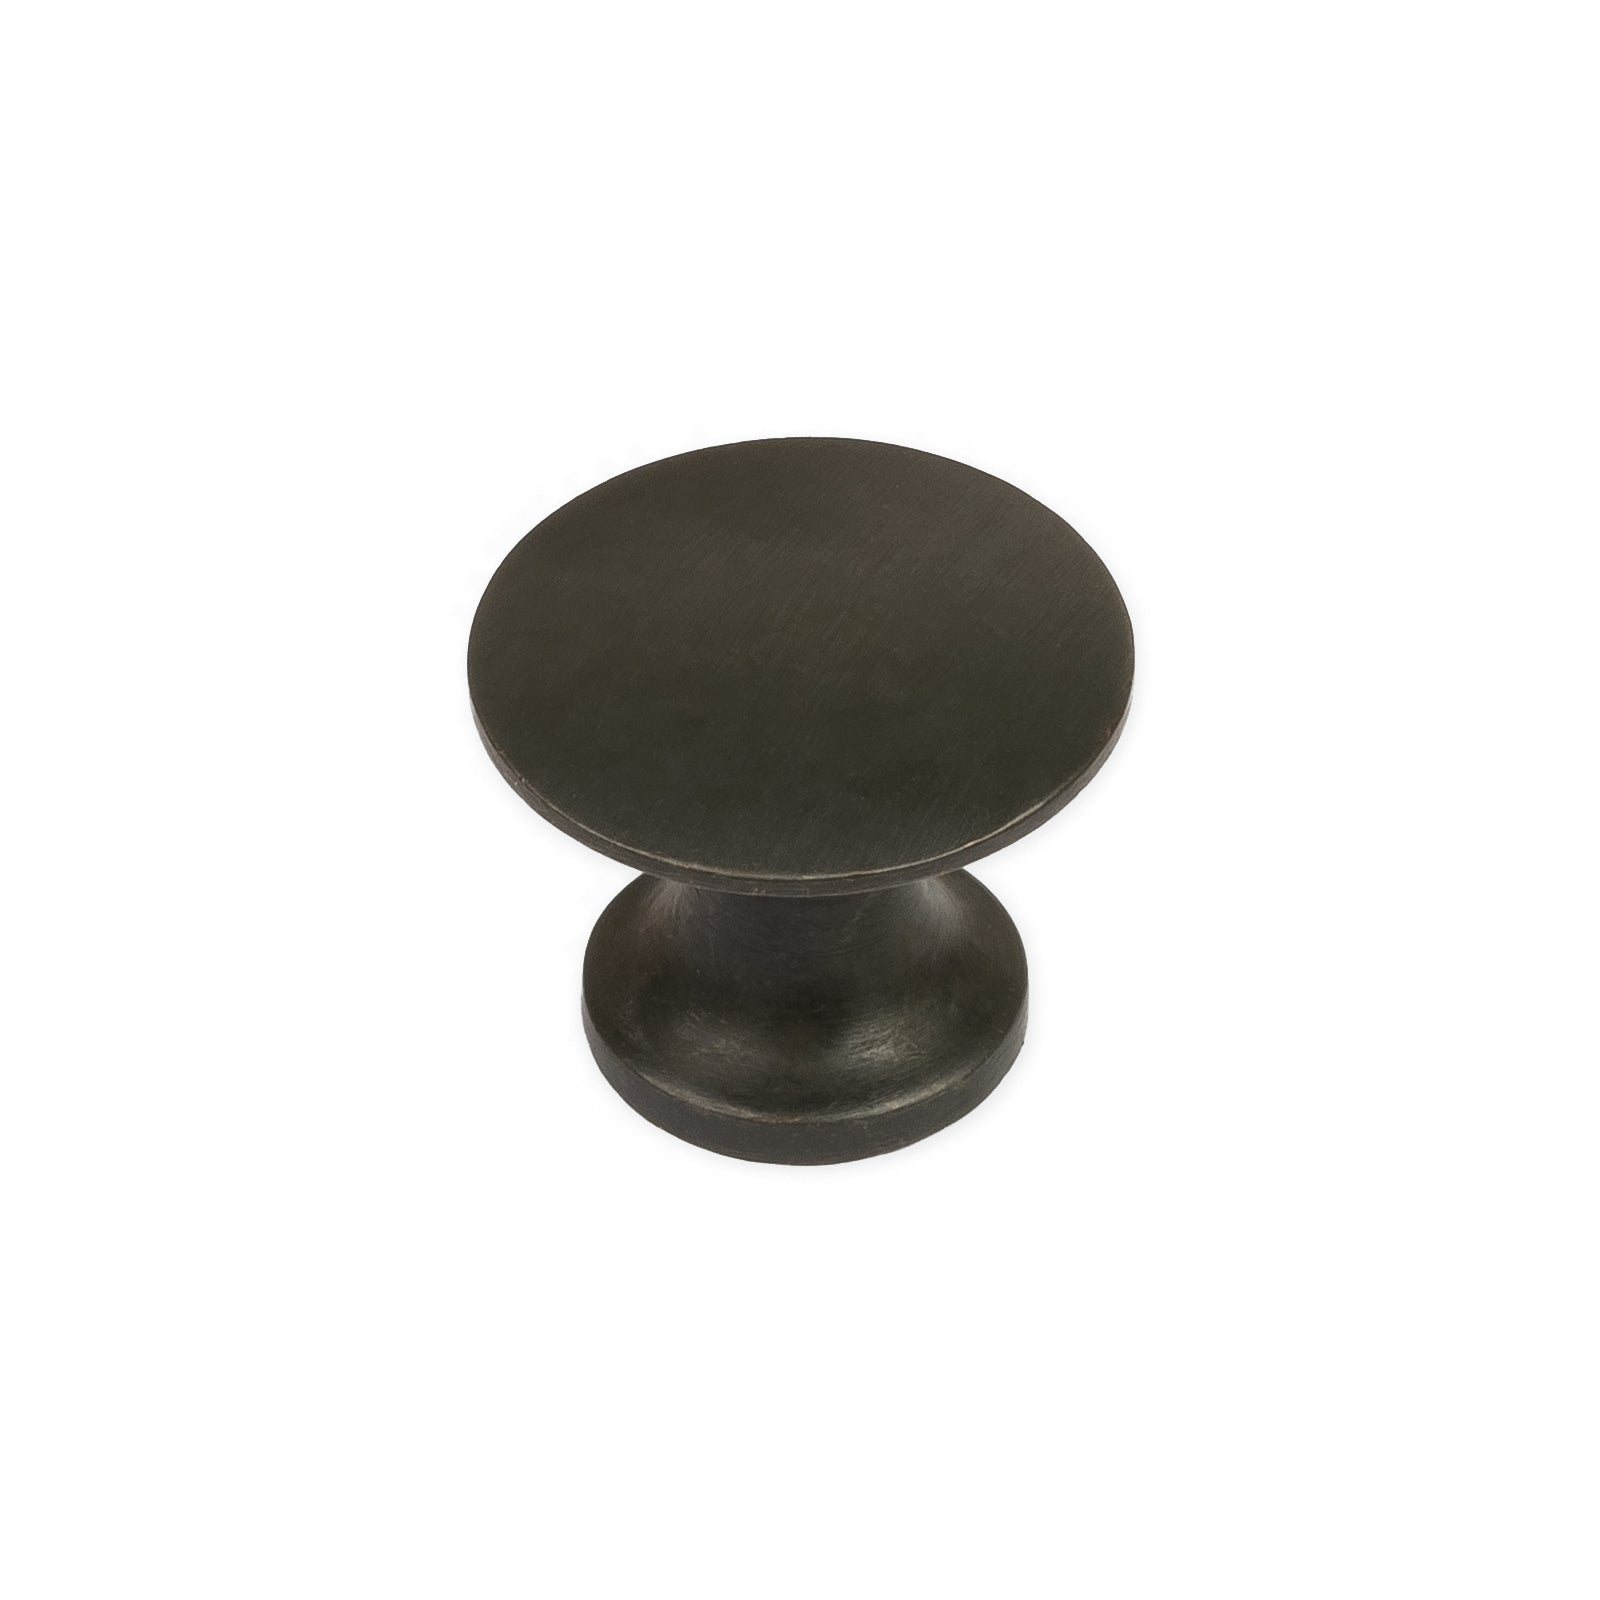 bronze wardrobe handles also known as bronze cupboard knob 20mm SHOW